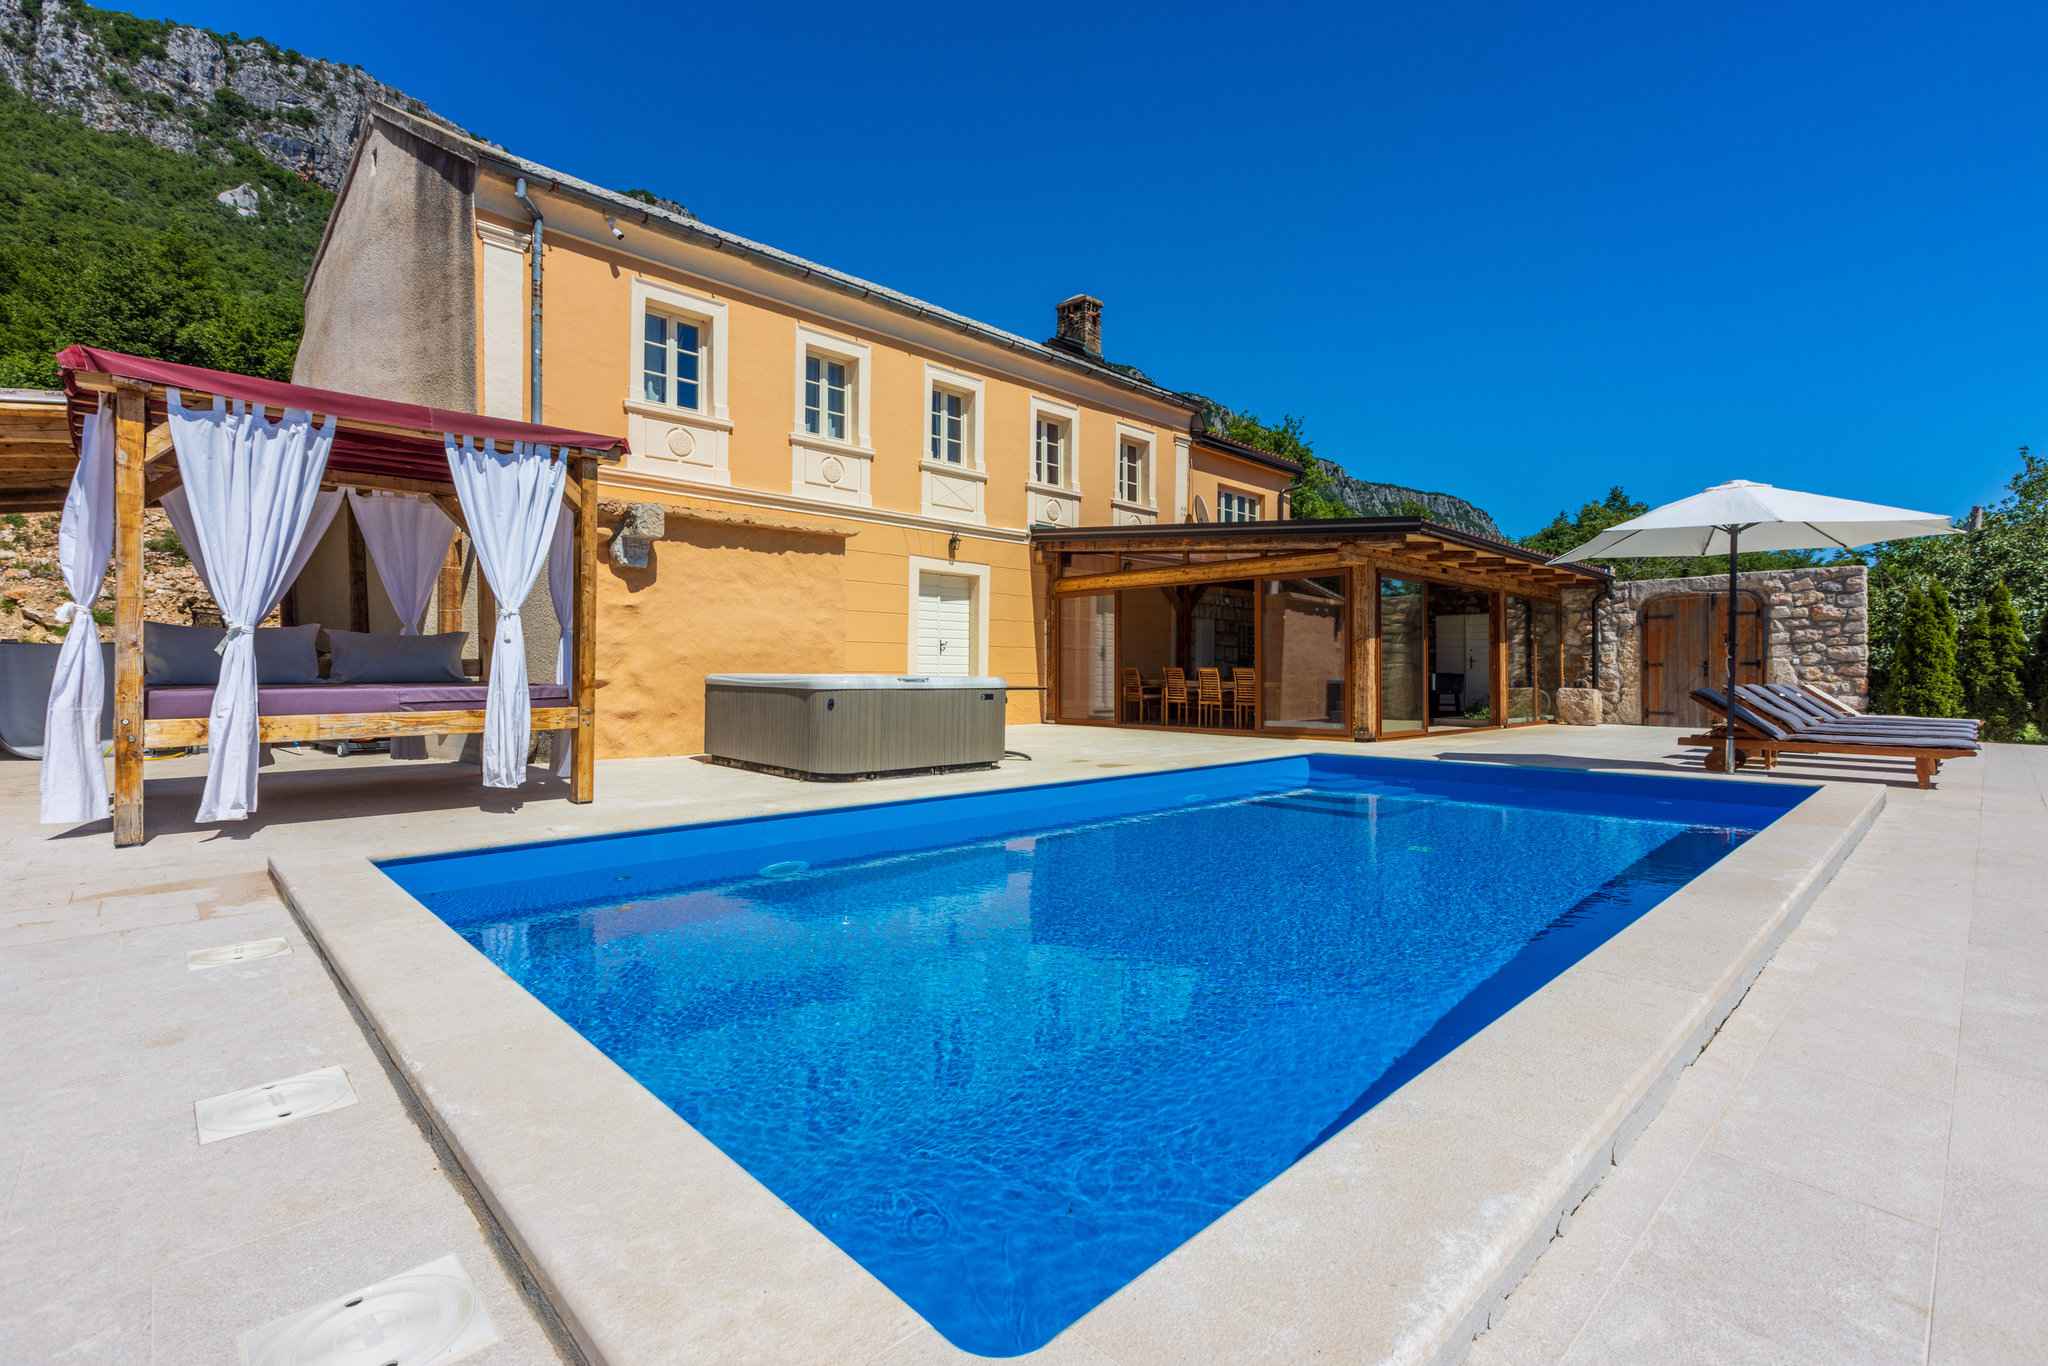 Ferienhaus mit Pool, Terrasse und Klimaanlage Ferienhaus in Kroatien